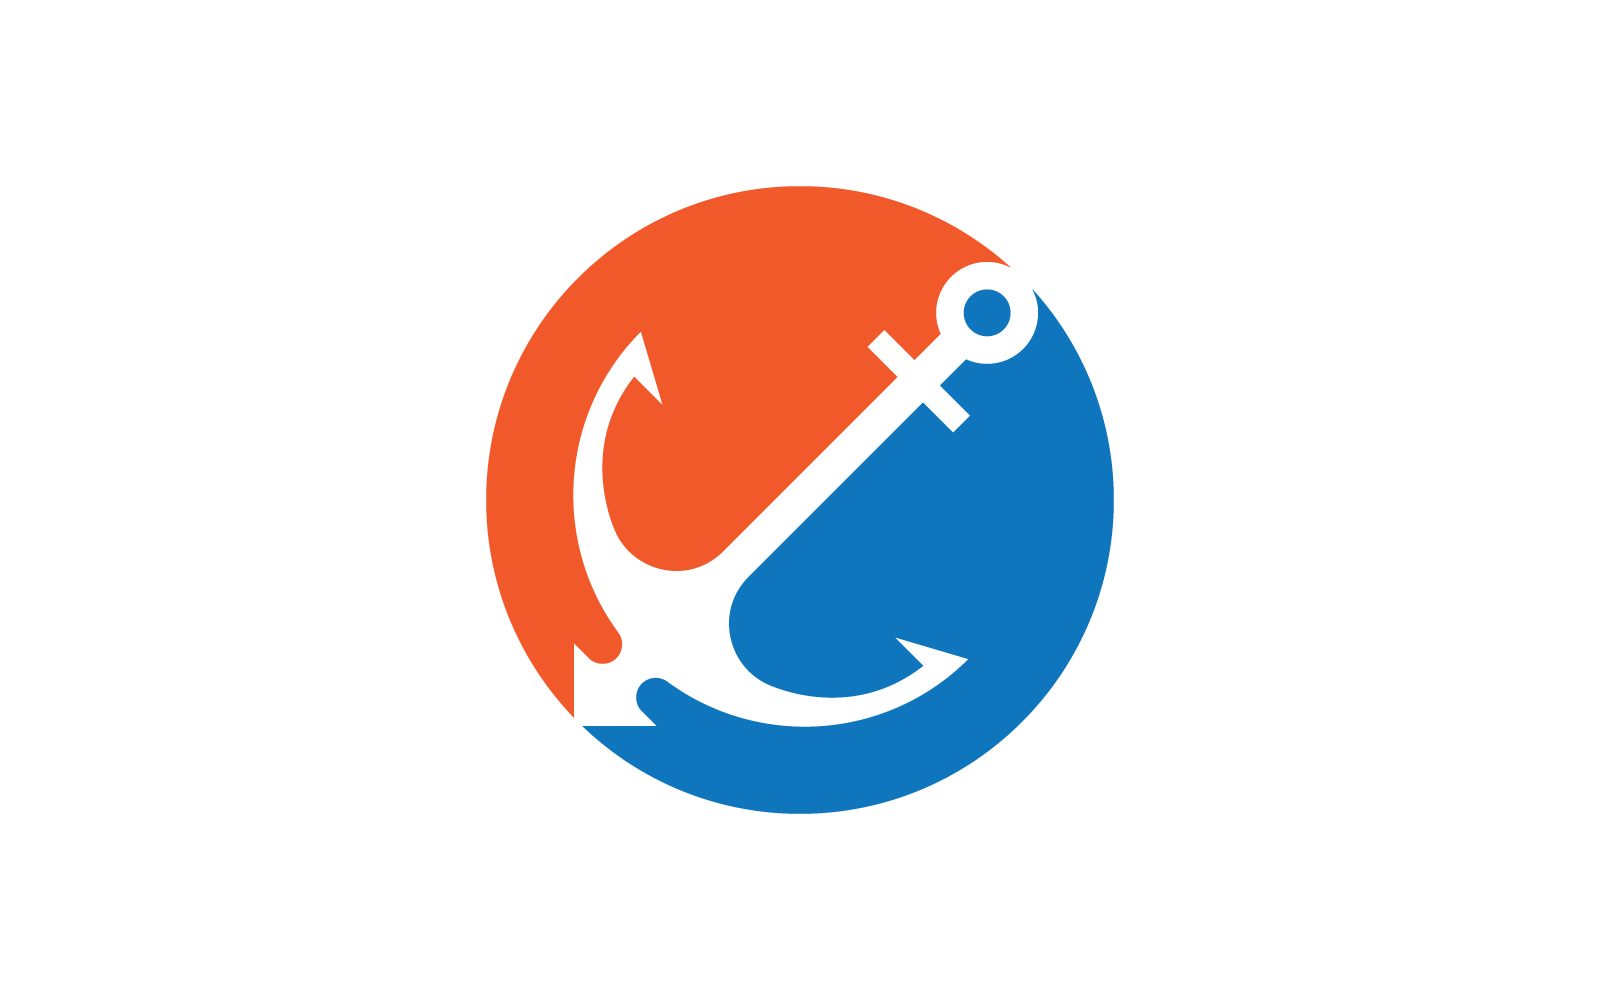 Anchor logo illustration vector